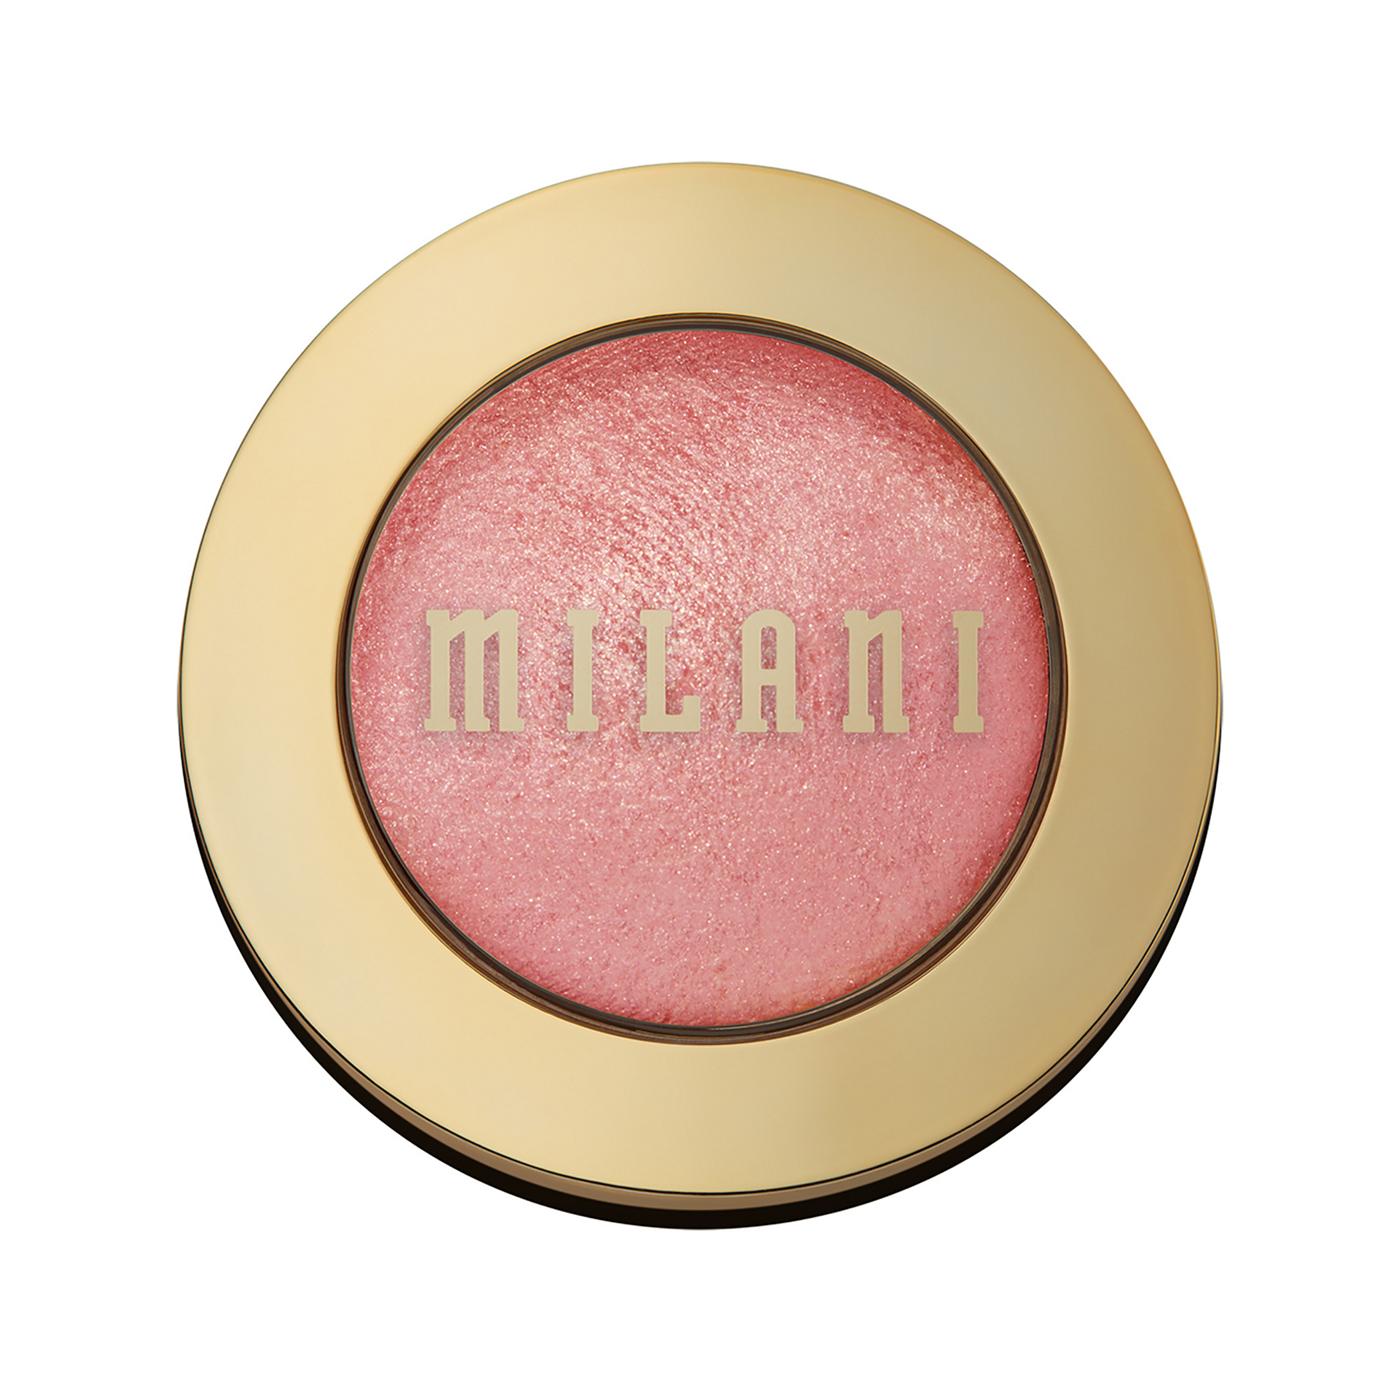 Milani Baked Blush - Dolce Pink; image 1 of 7